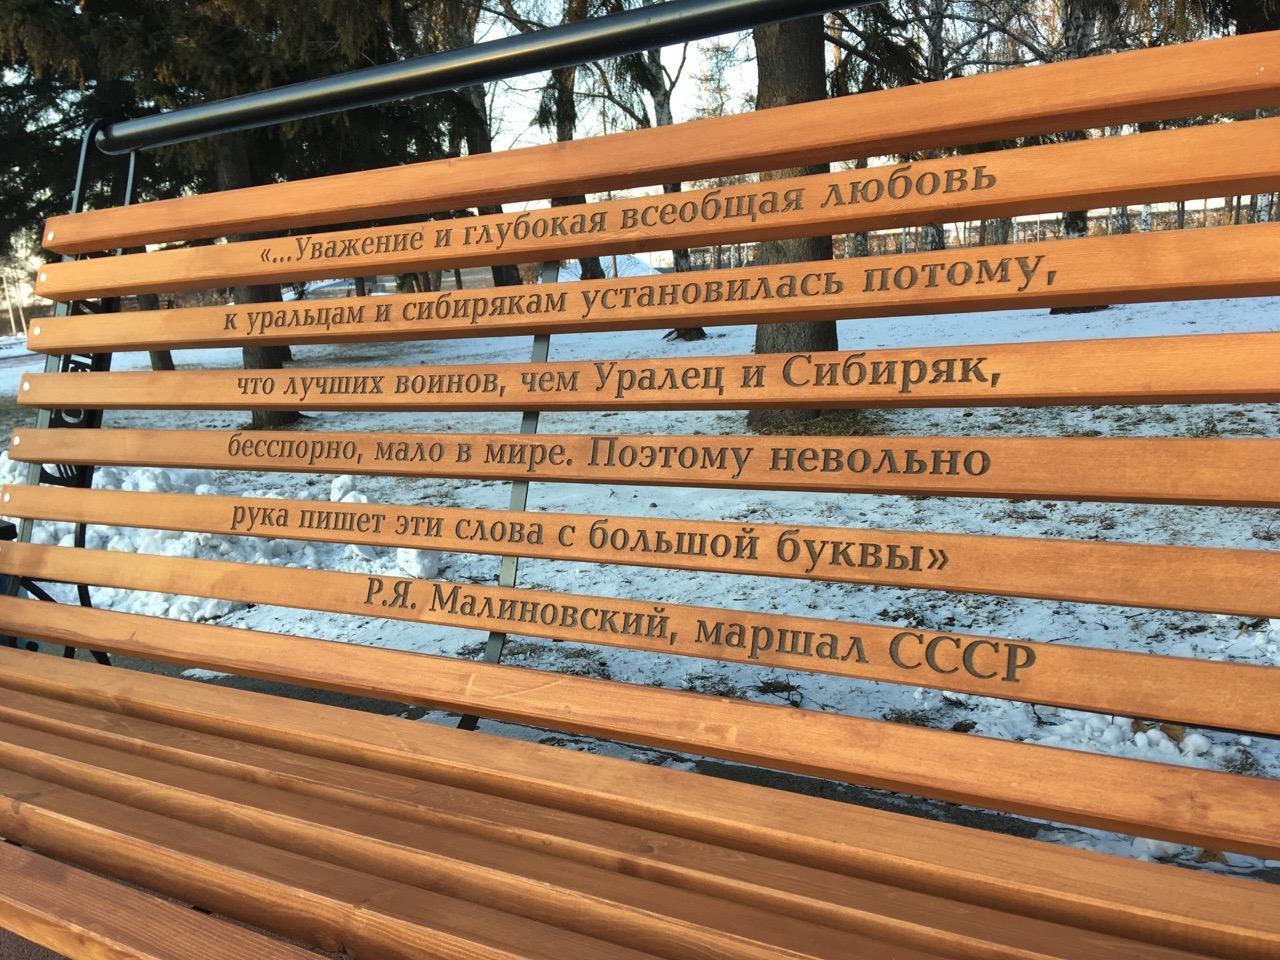 Обновленная площадь у "Вечного огня" в Иркутске. Фото